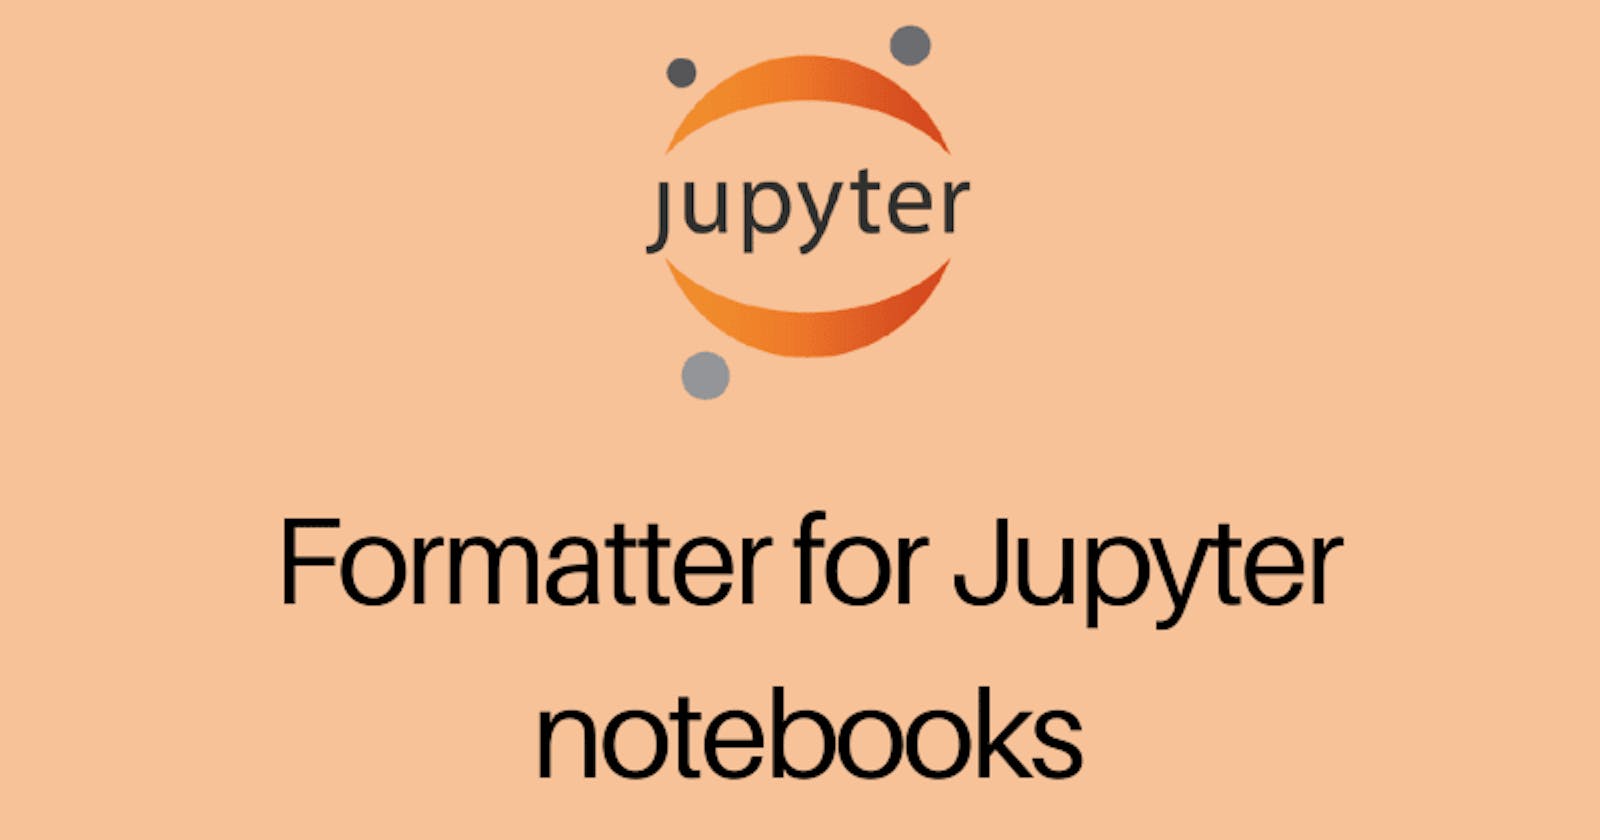 Formatter for Jupyter notebooks